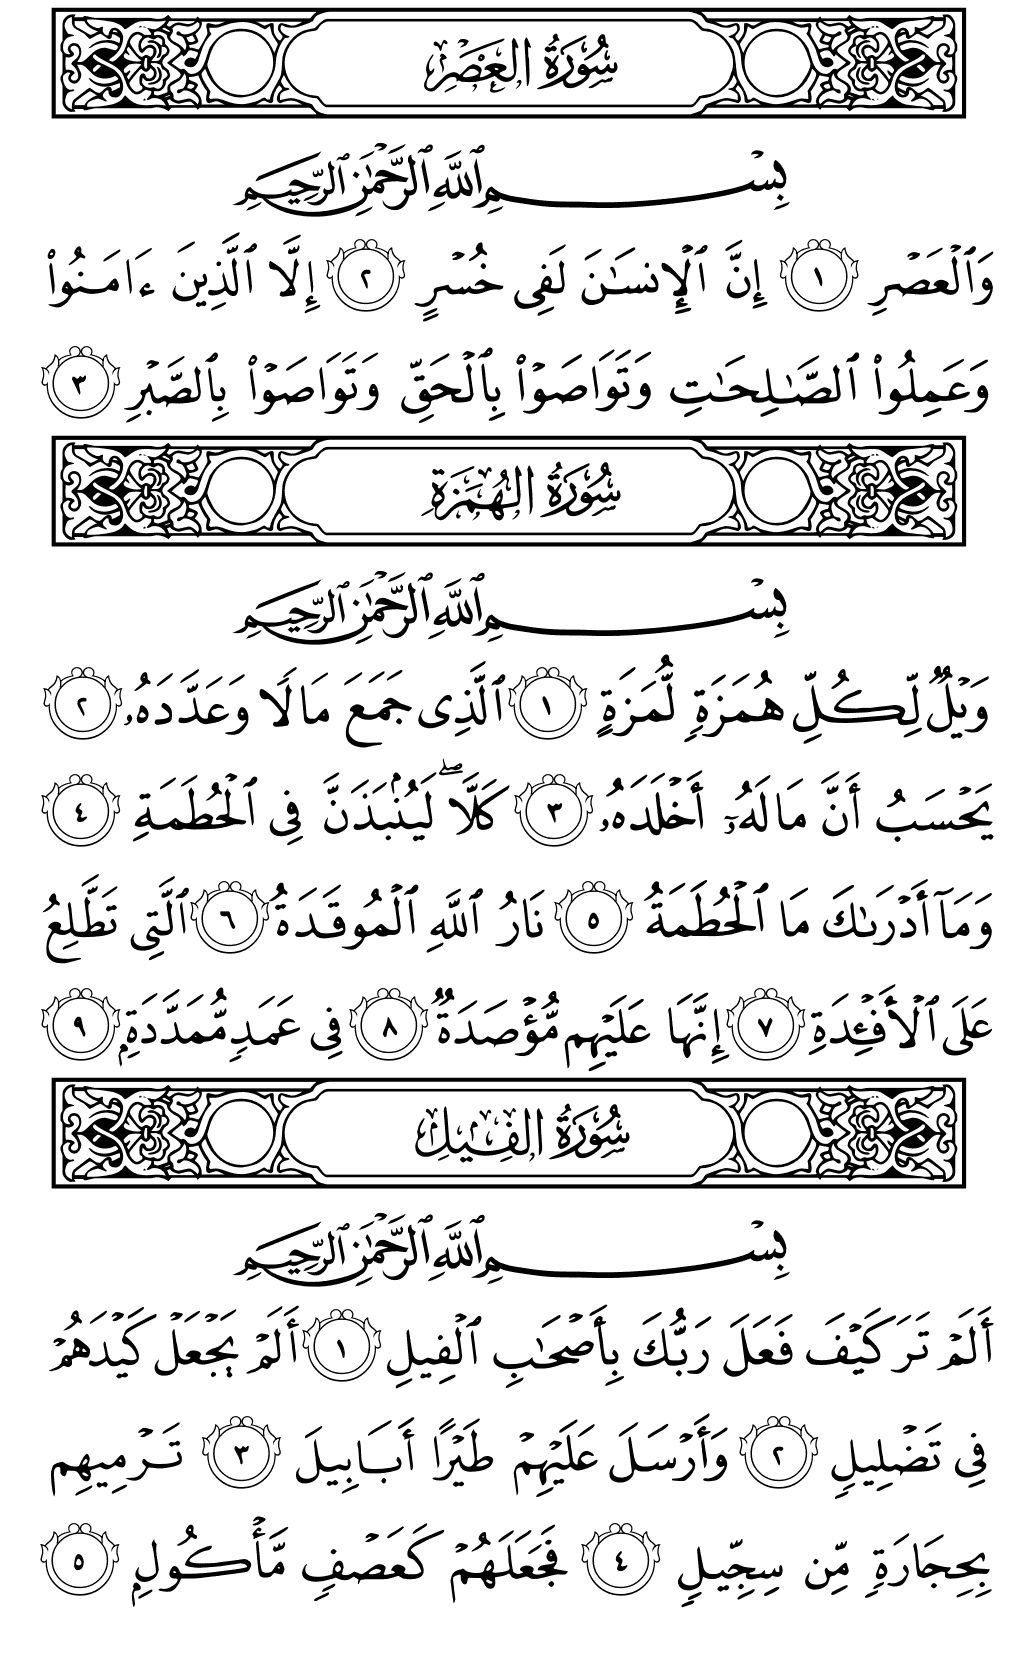 الصفحة رقم 601 من القرآن الكريم